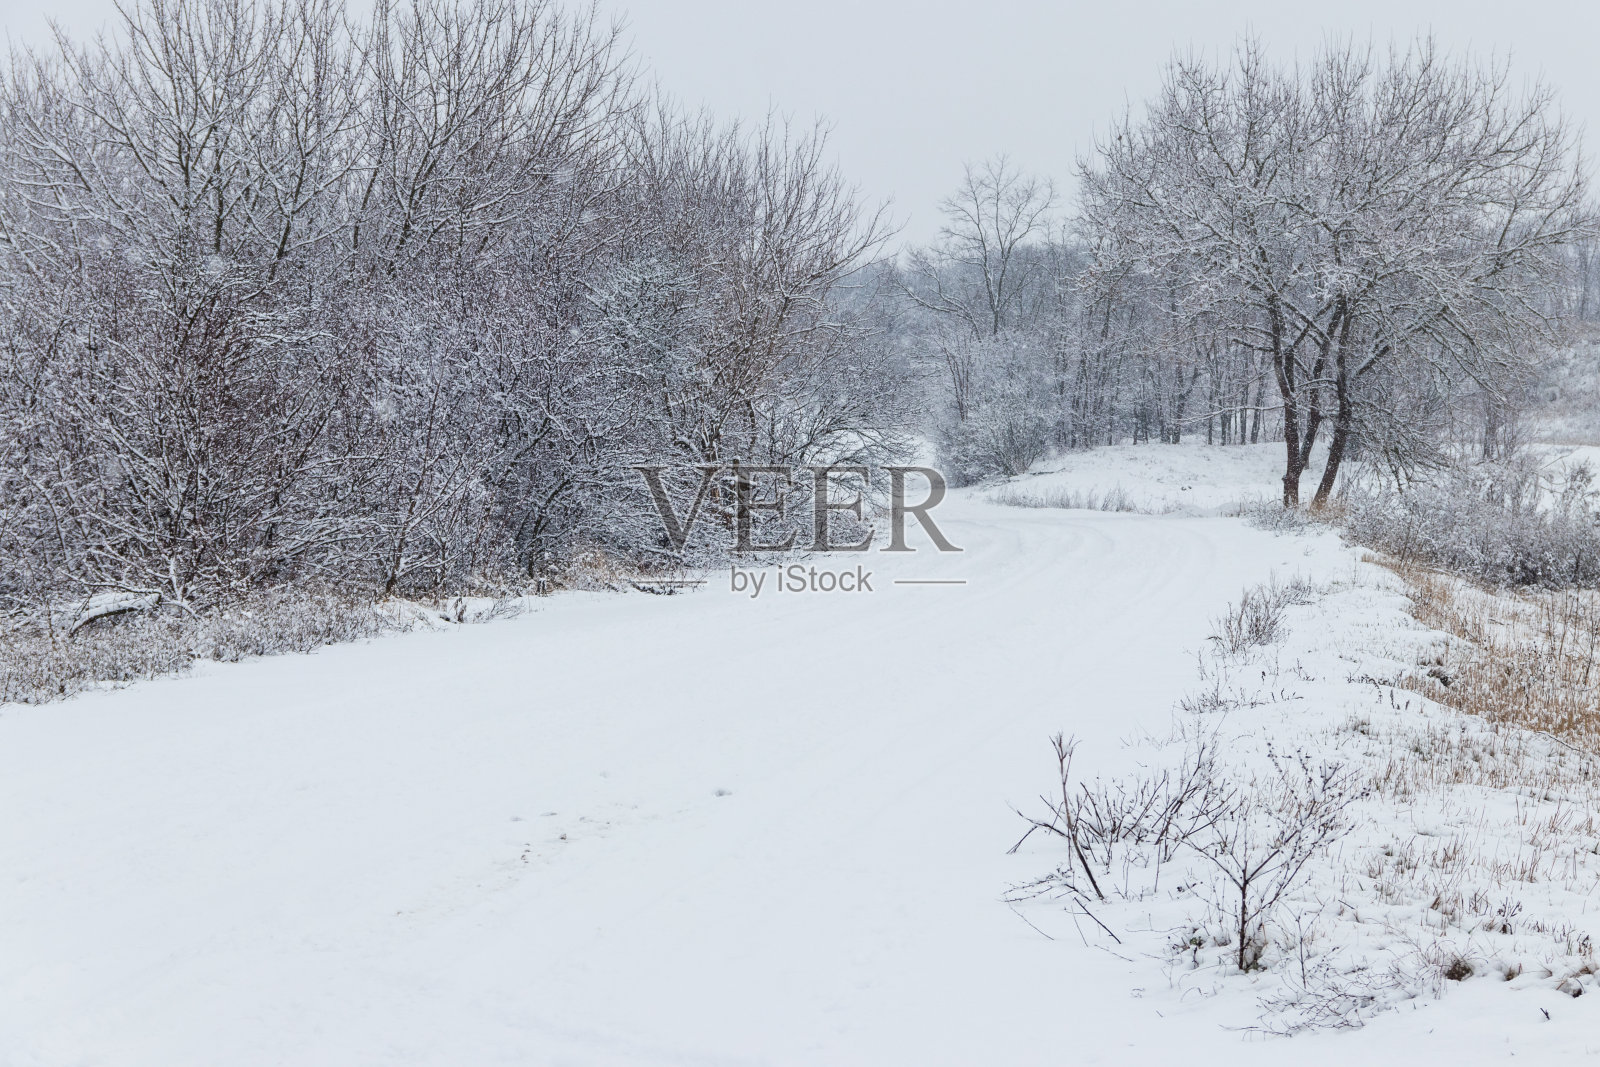 下雪时下雪的路。冬天农村景观照片摄影图片